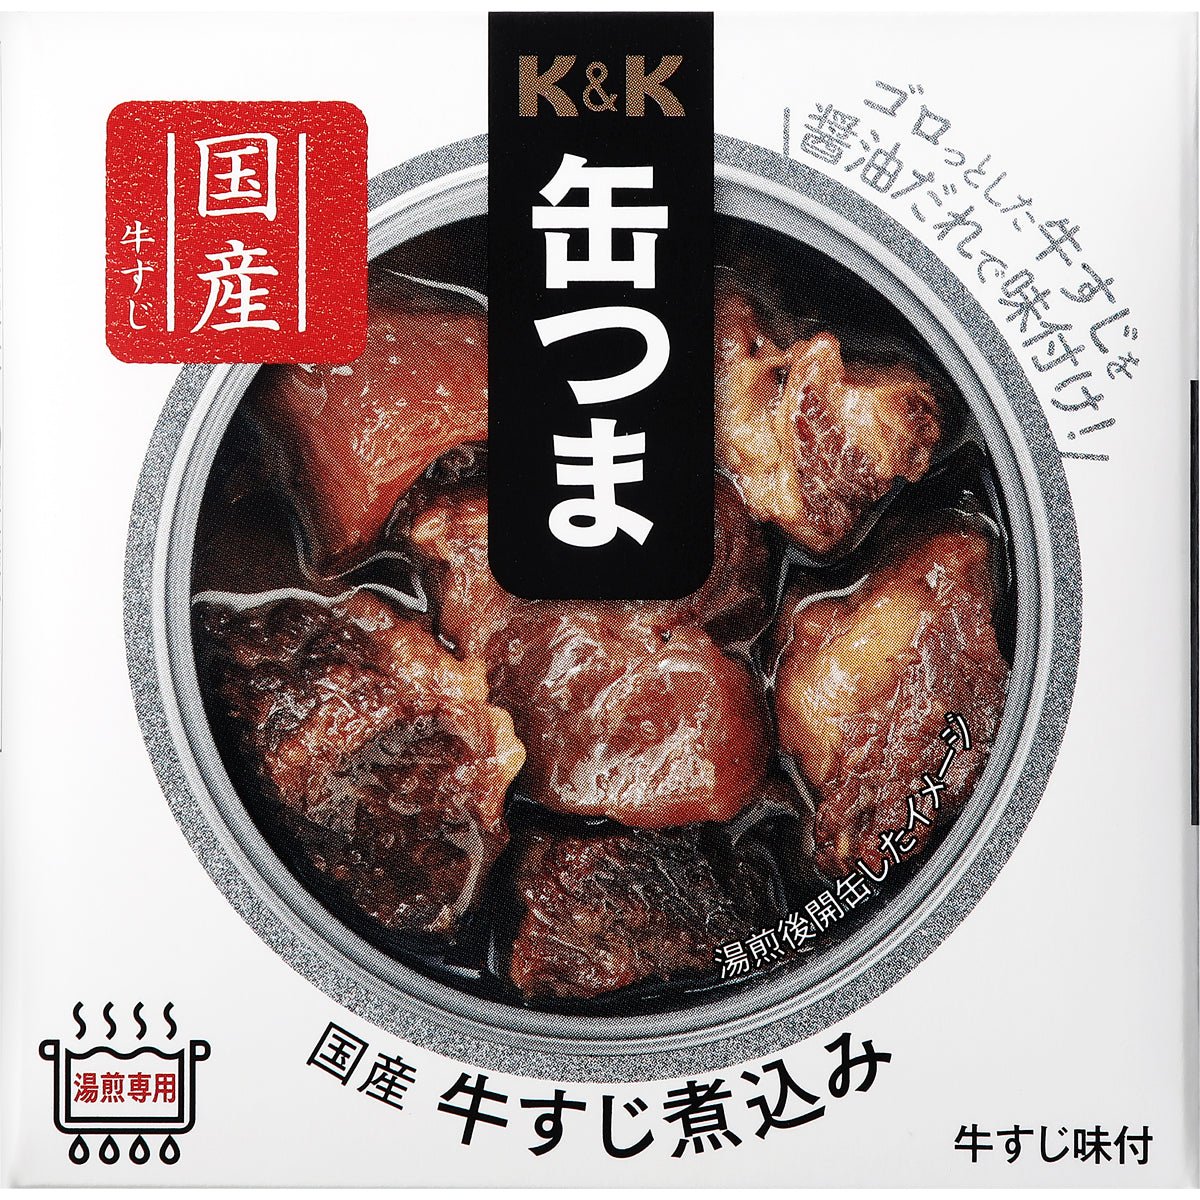 K & K cans rice stewed beef stewed